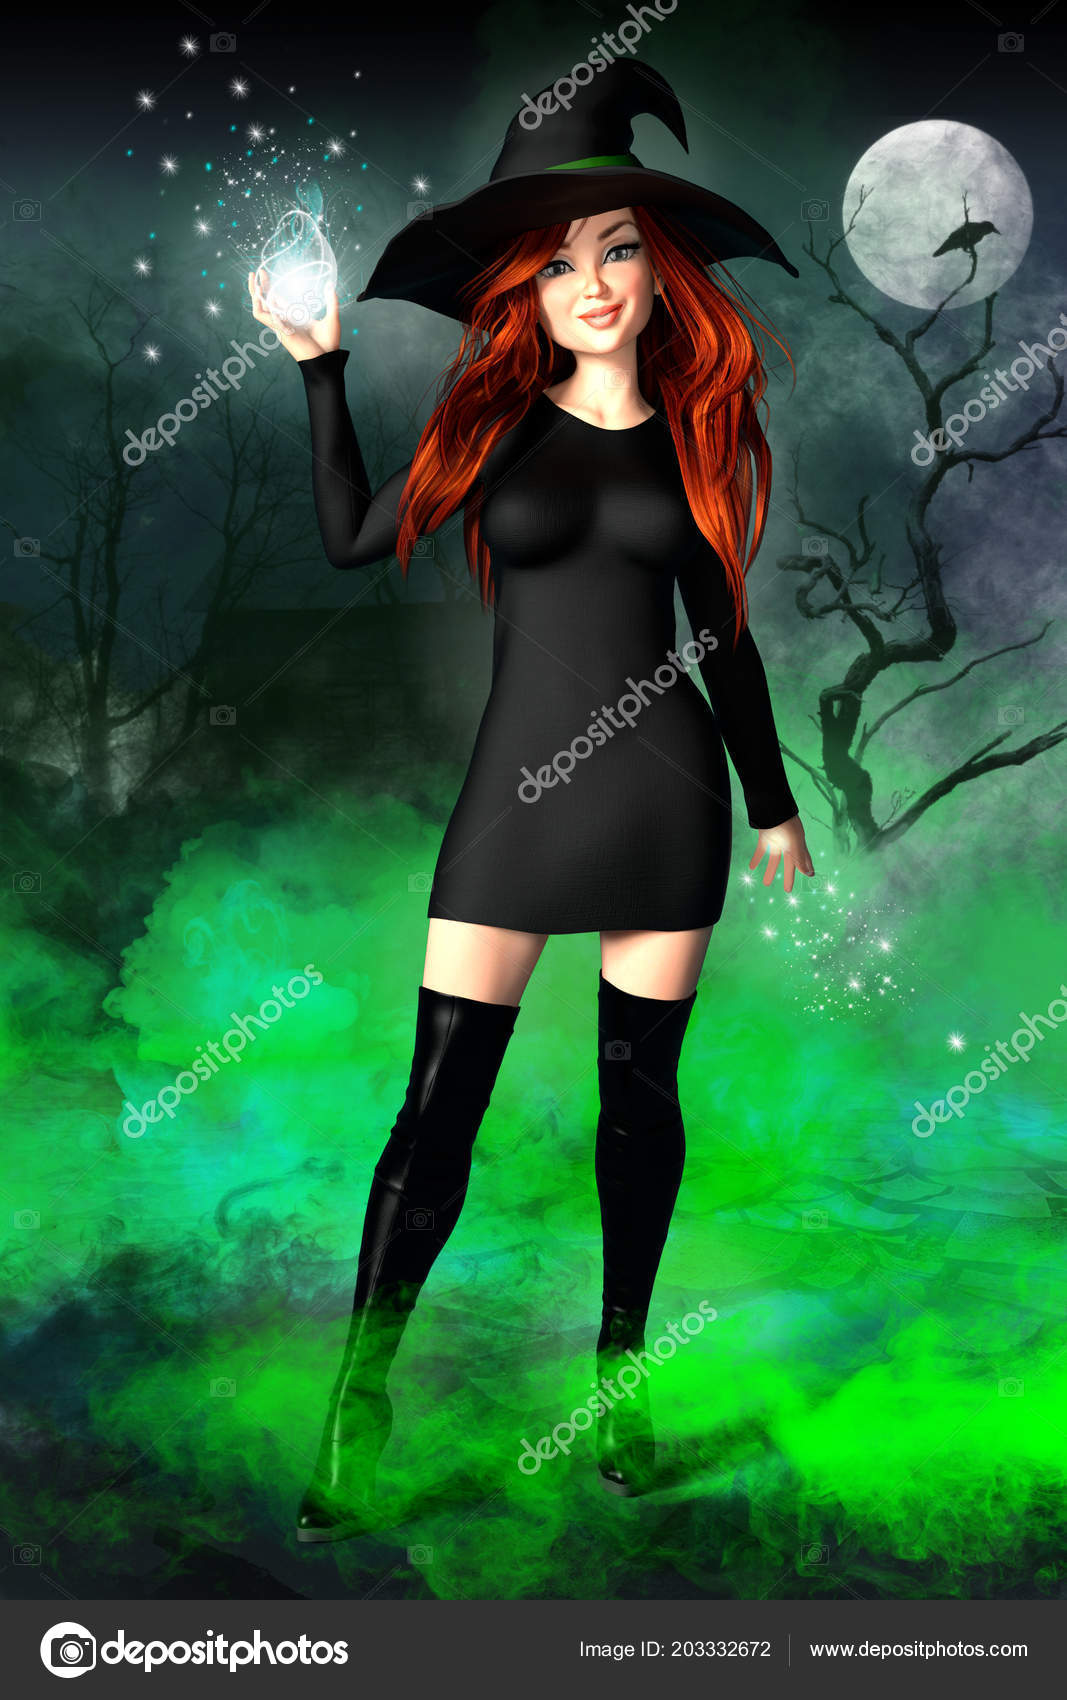 Ilustração de uma jovem bruxa bonita e confiante segurando uma bola de  magia fotos, imagens de © MerryDesigns #203332672